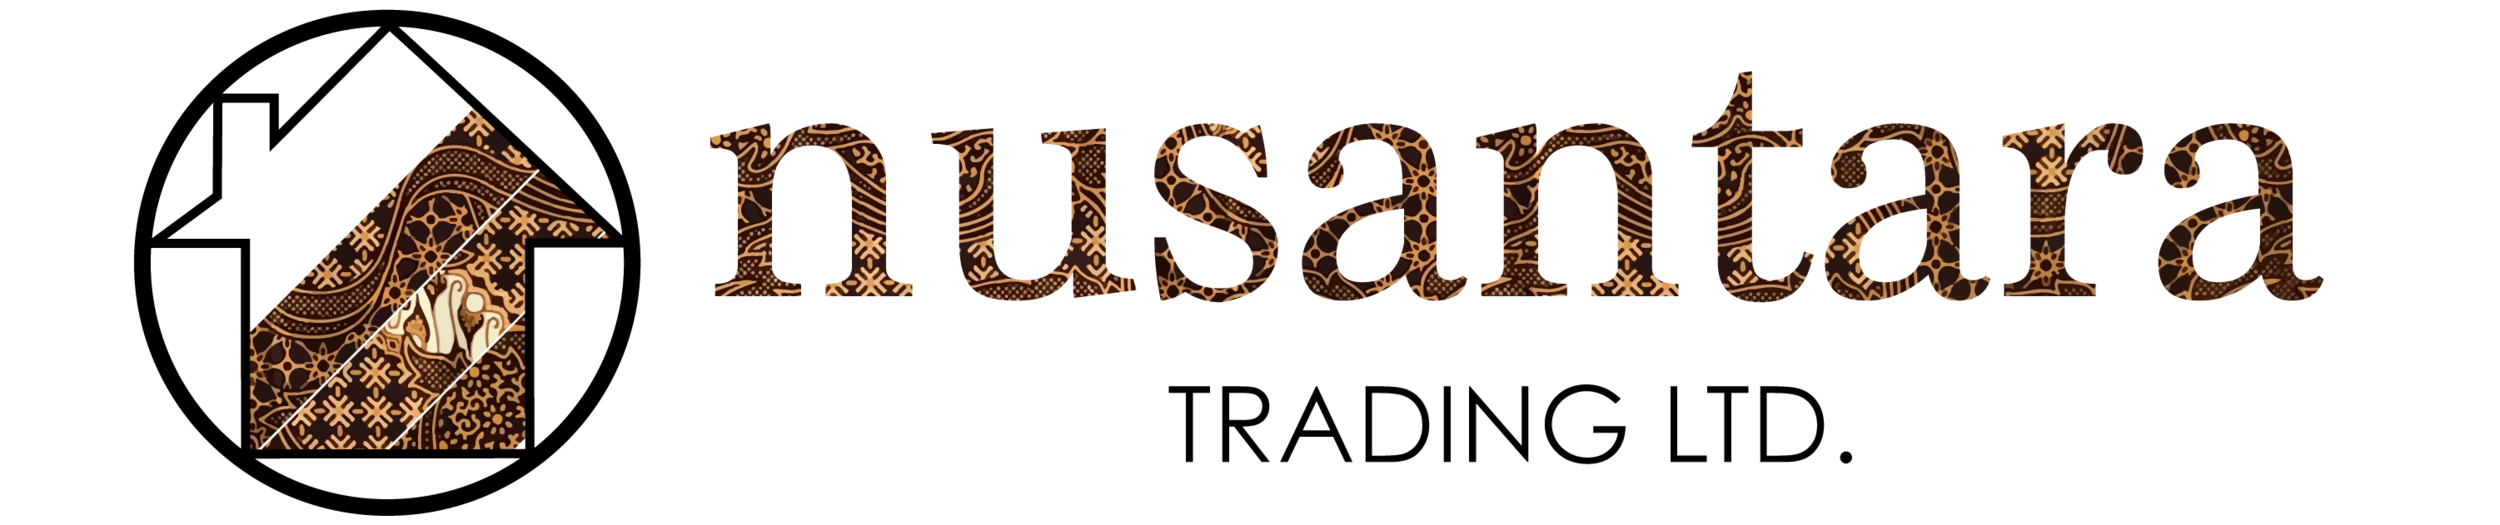 Nusantara Trading Ltd.